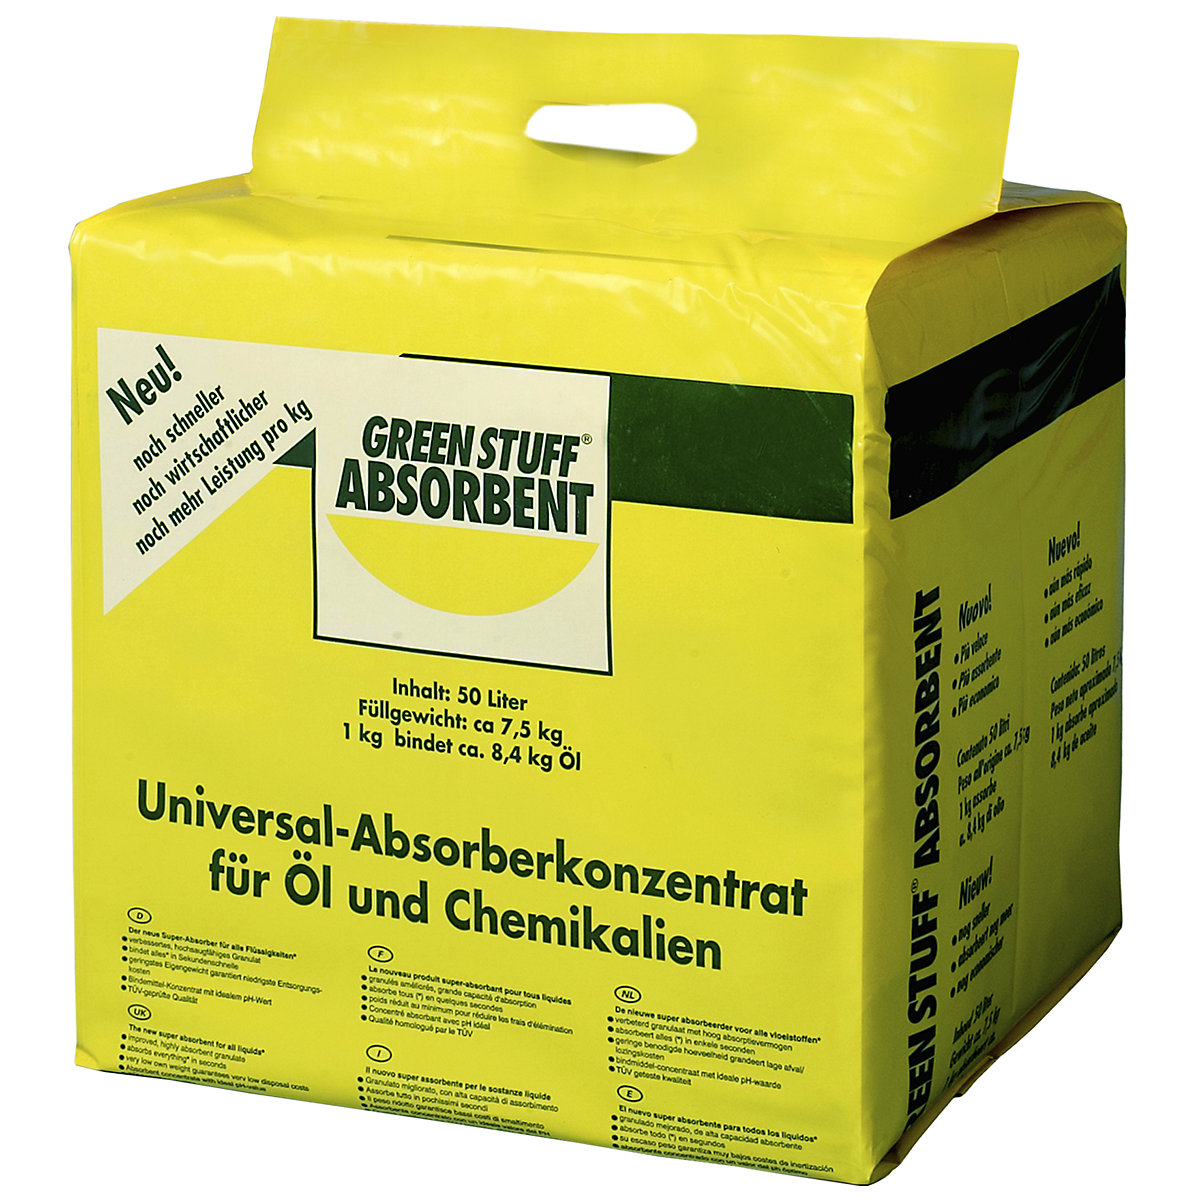 Concentrado absorbente universal, granulado en bolsa, l 50, UE 2 unidades